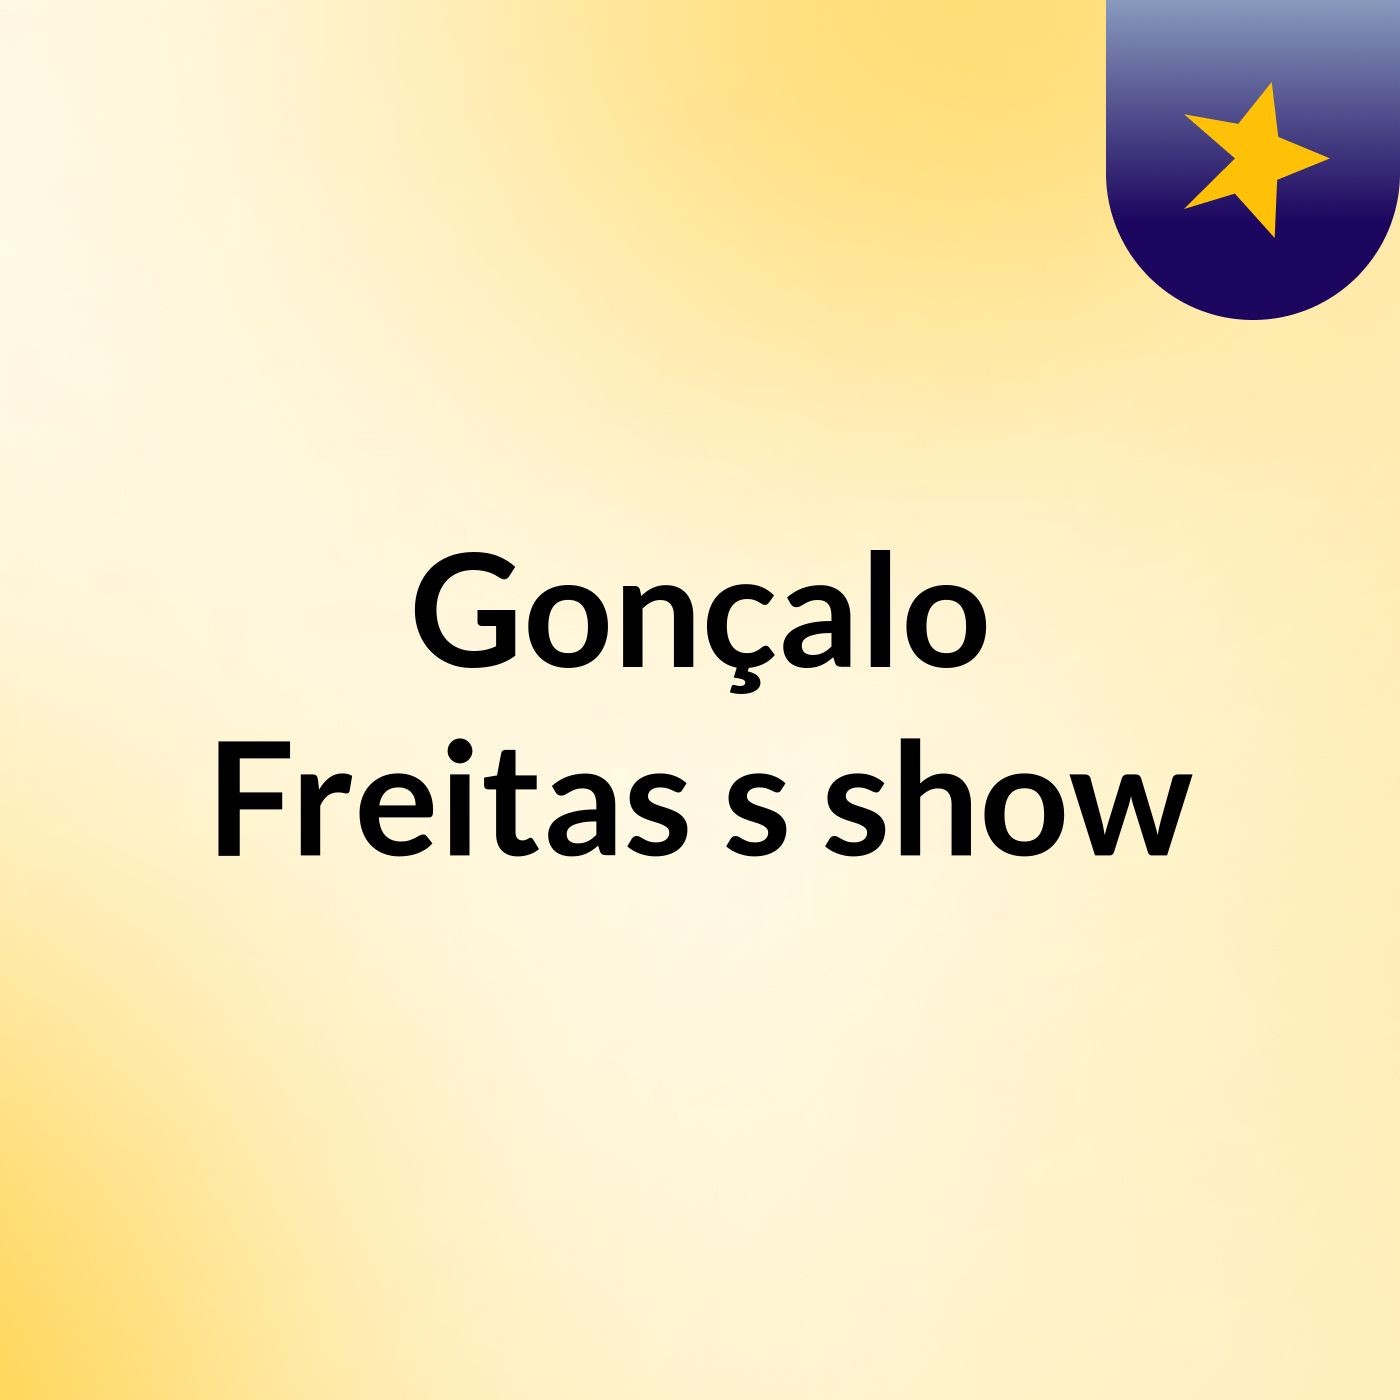 Gonçalo Freitas's show